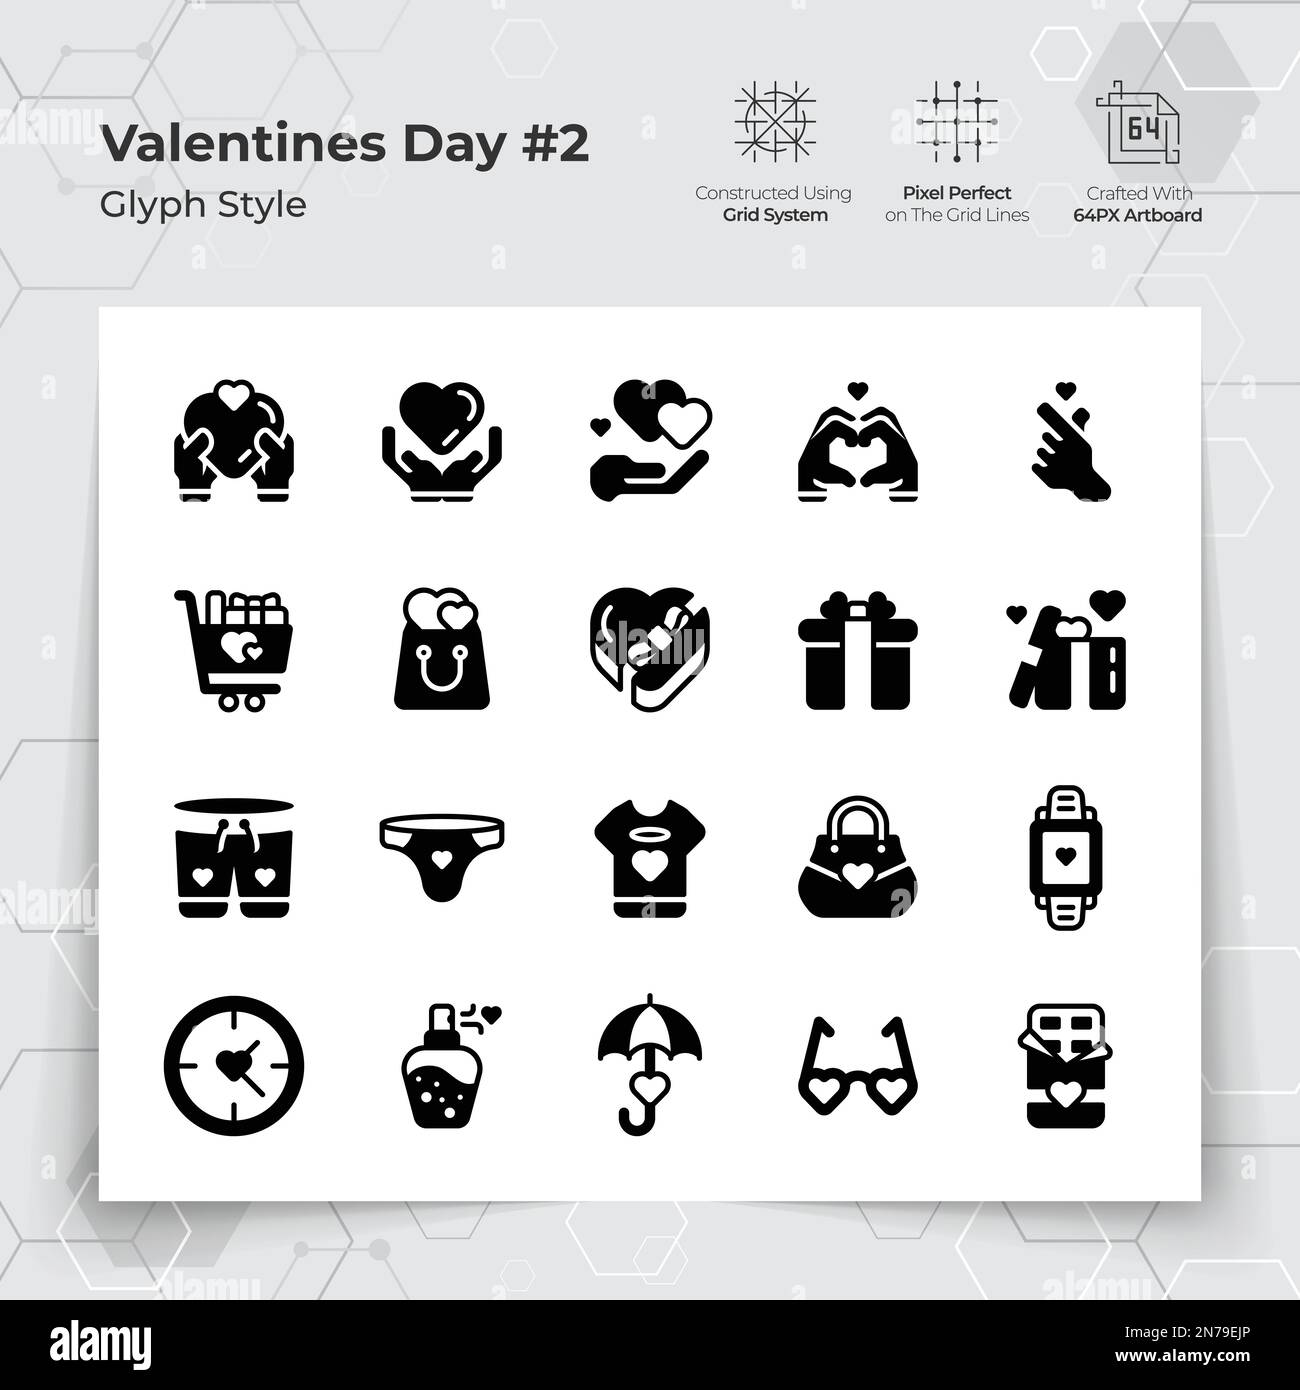 Valentinstag-Ikone in Glyph Black erfüllt den Stil mit Geschenken und verlieben sich. Eine Sammlung von Liebes- und Romantik-Vektorsymbolen für Valentinstag Stock Vektor